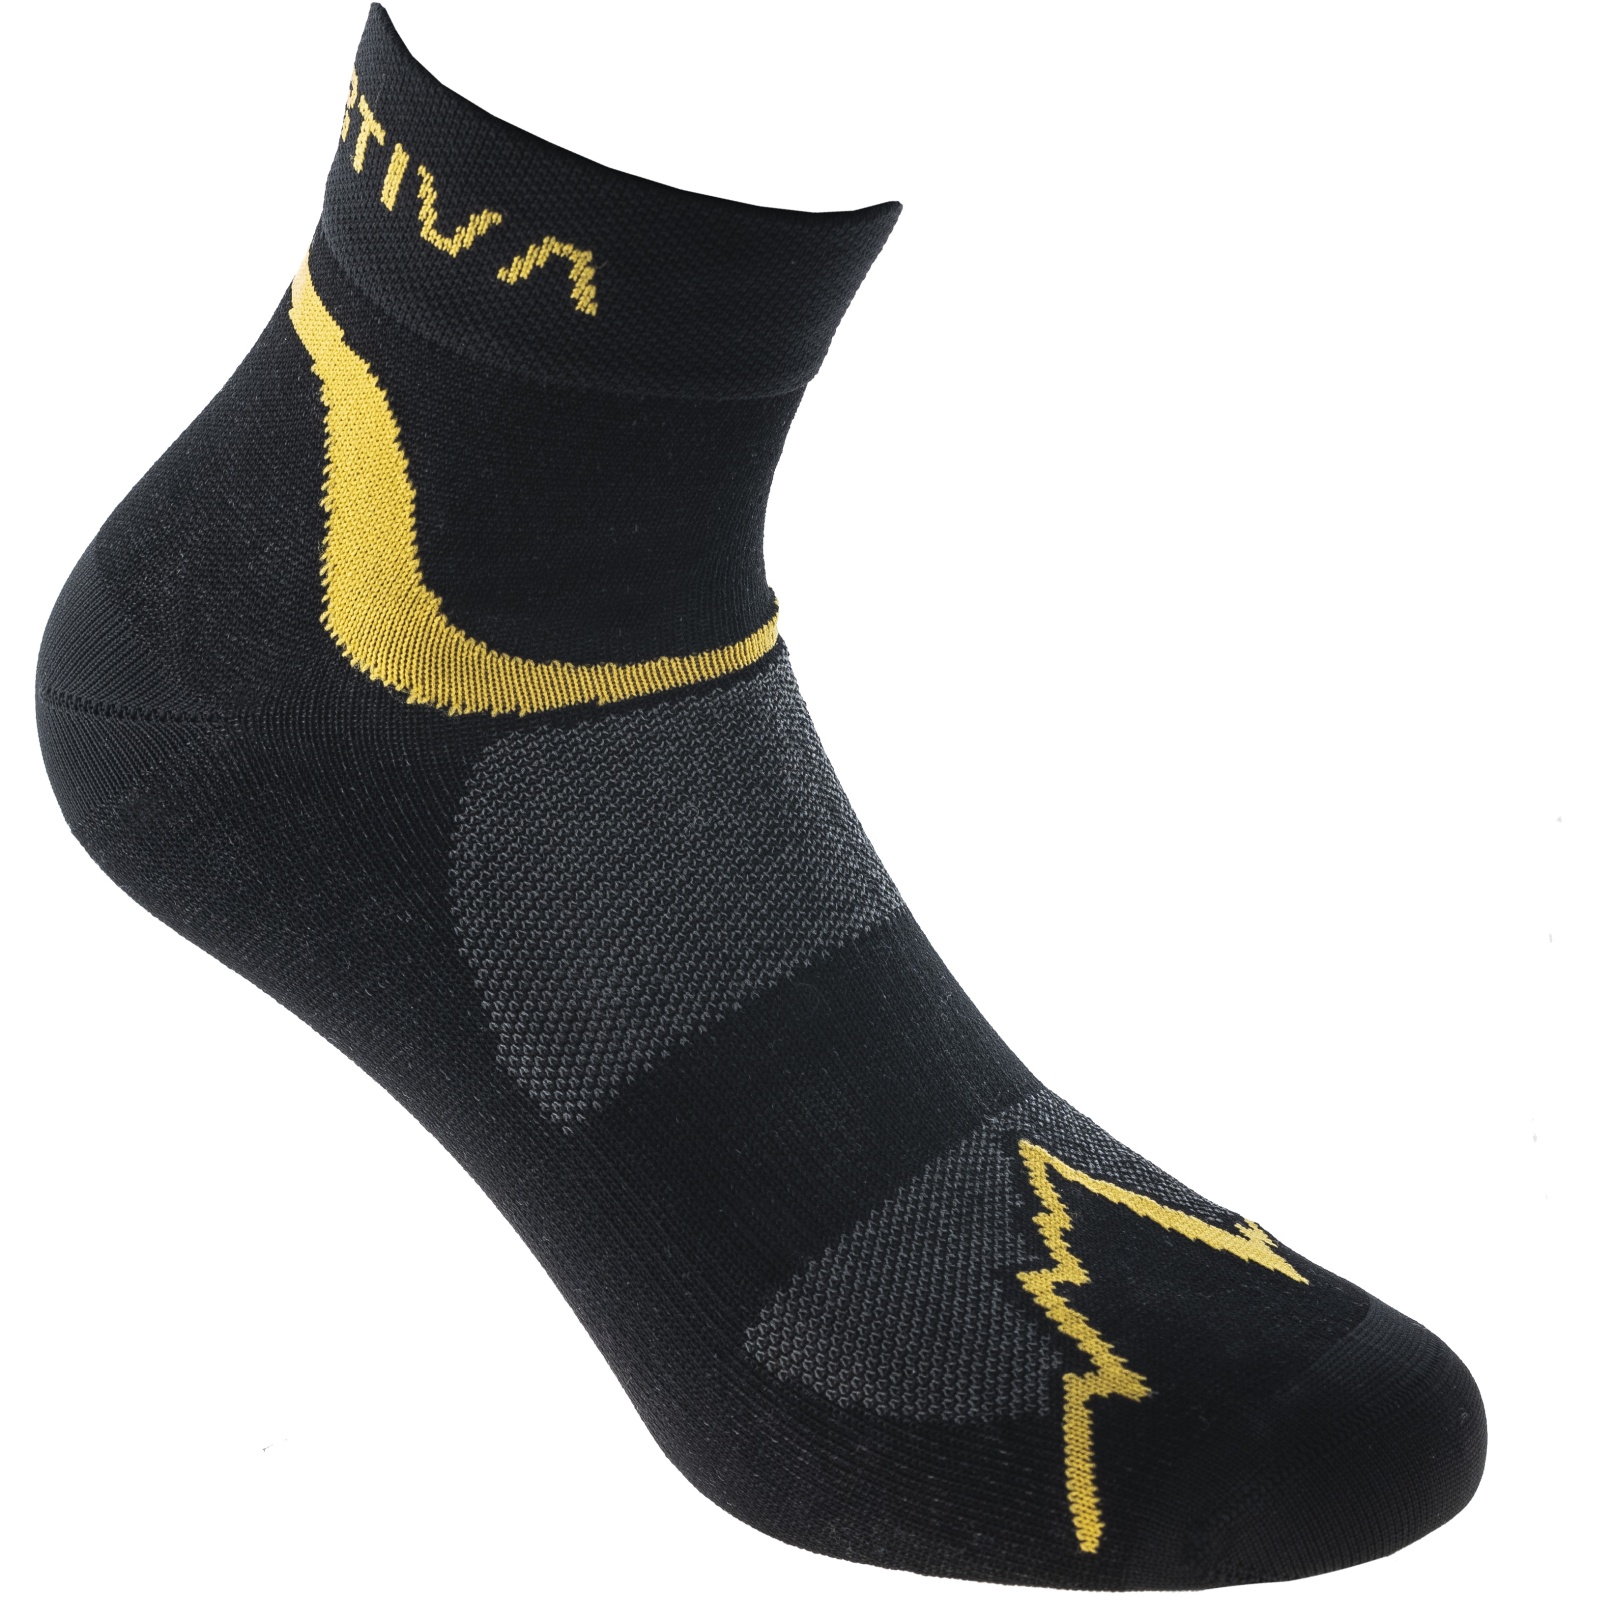 Produktbild von La Sportiva Fast Running Socken - Schwarz/Gelb 69A999100